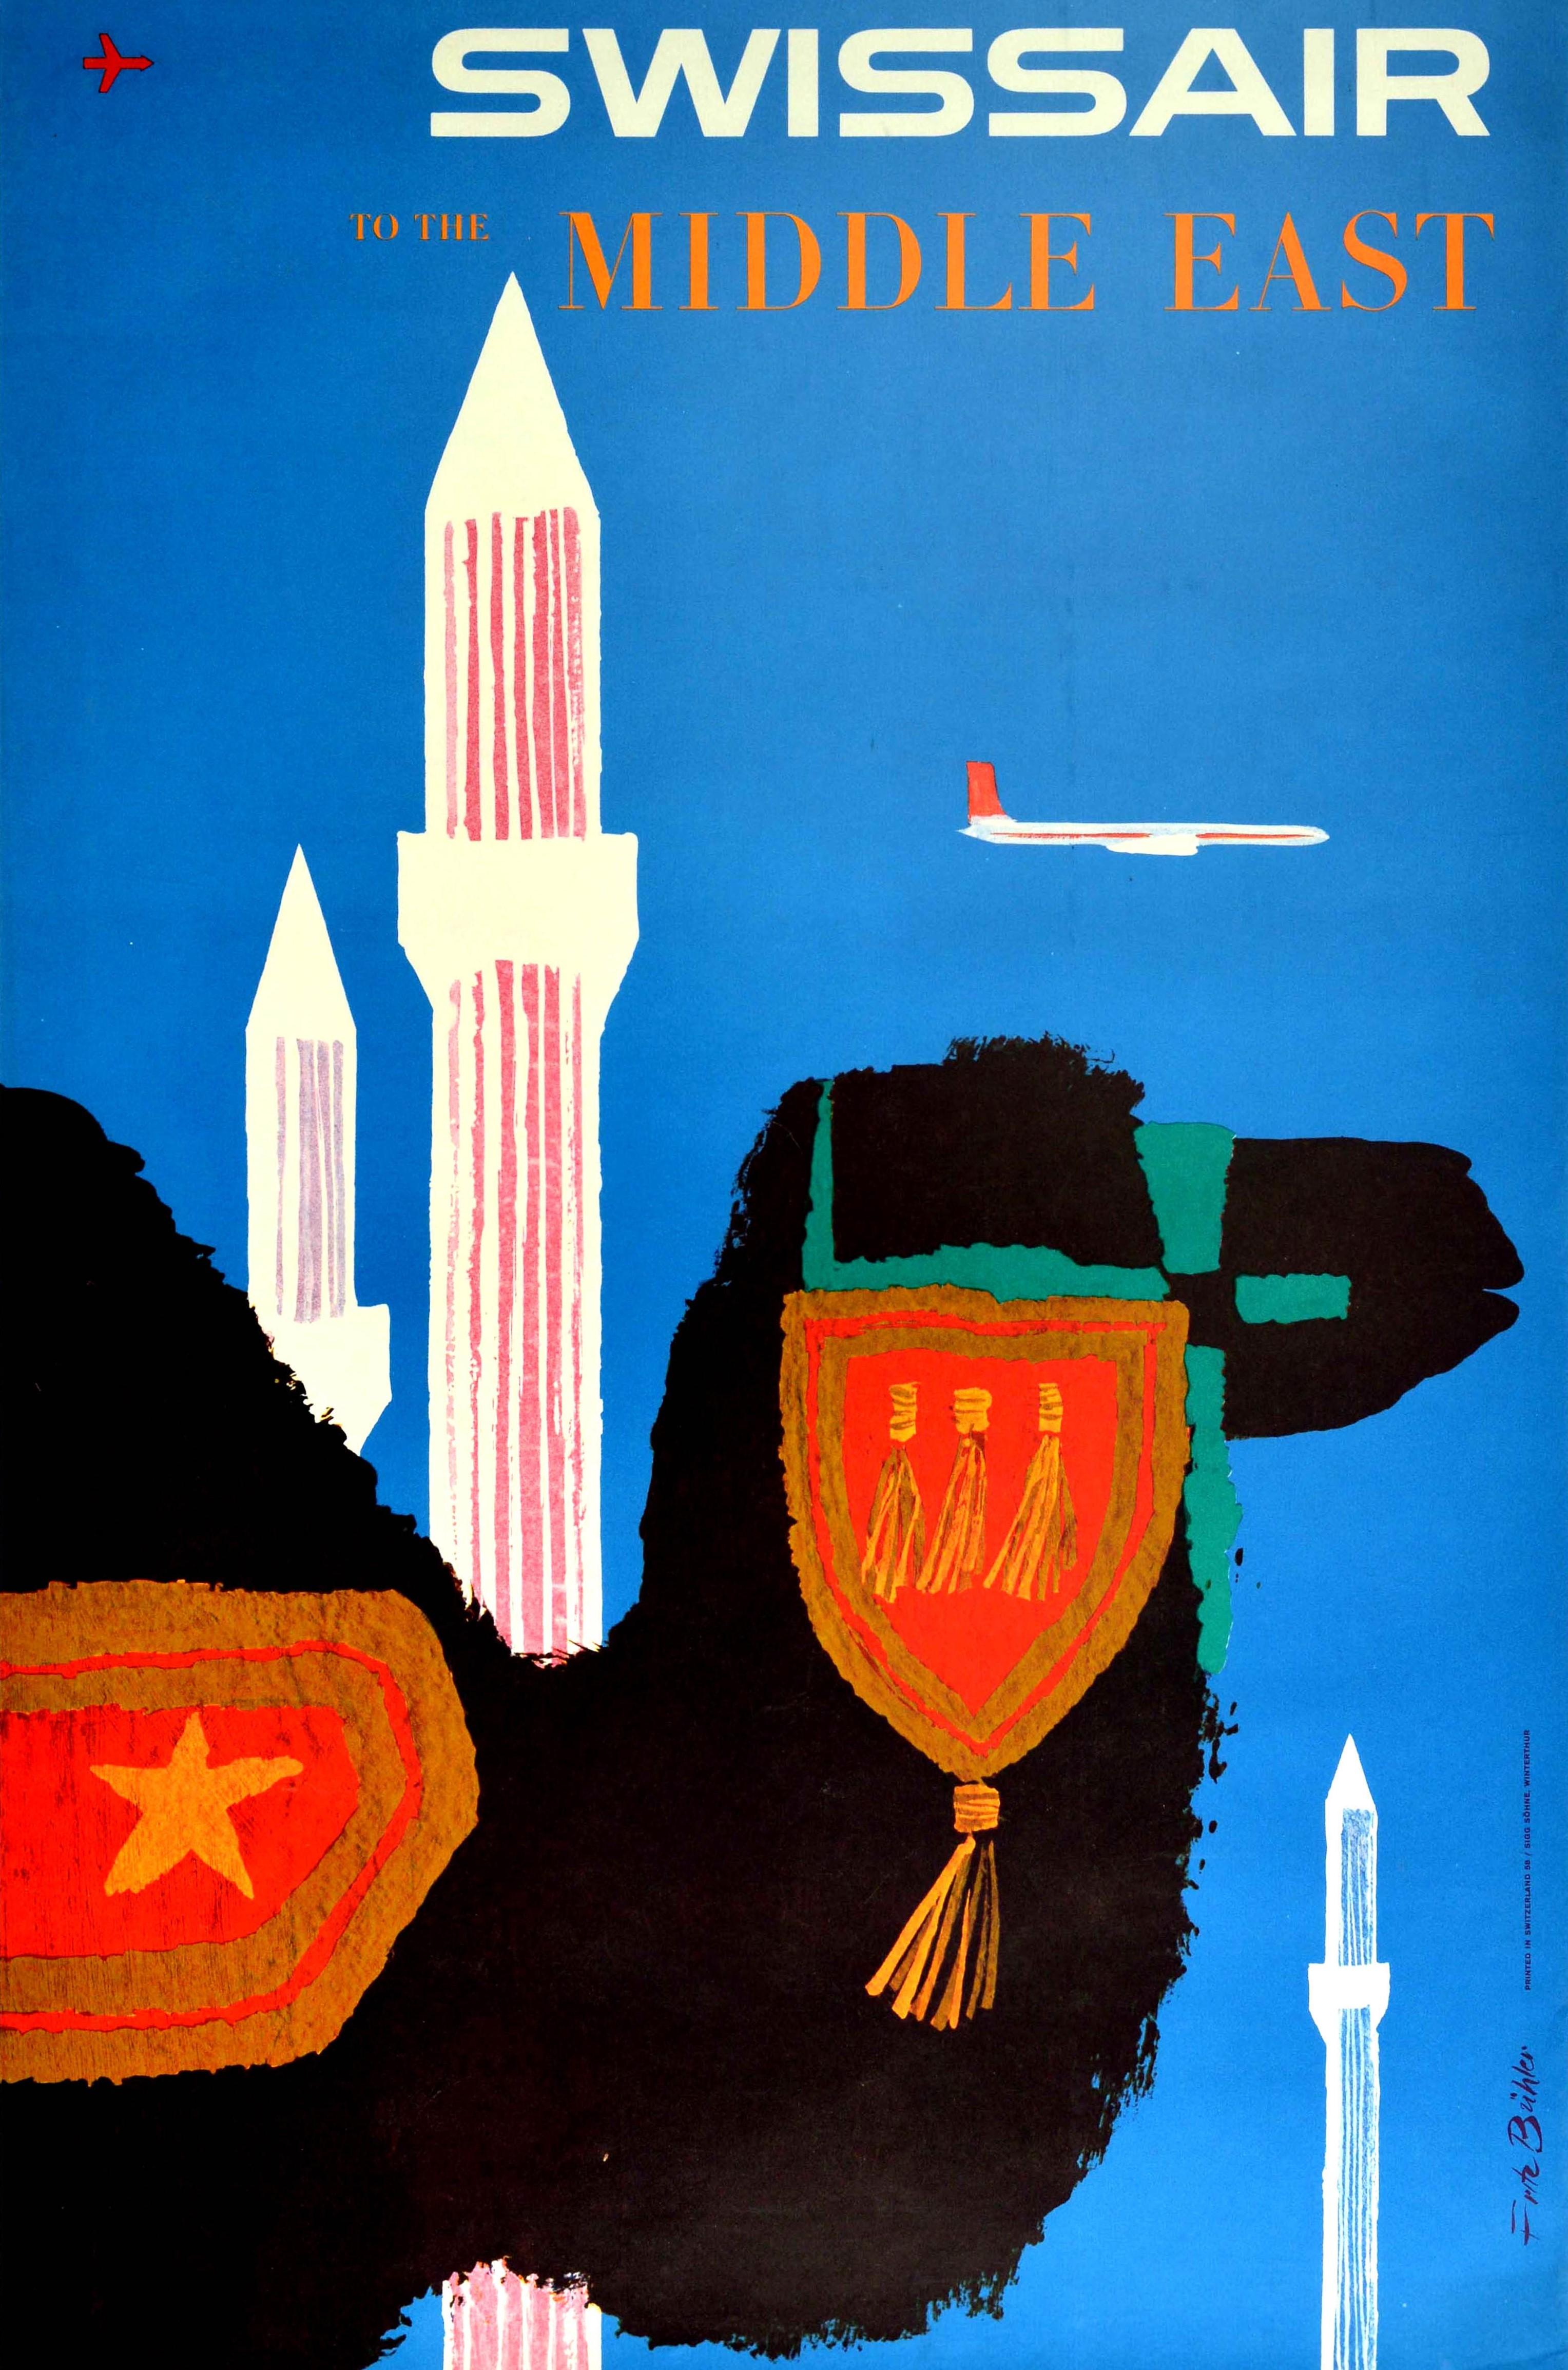 vintage camel poster